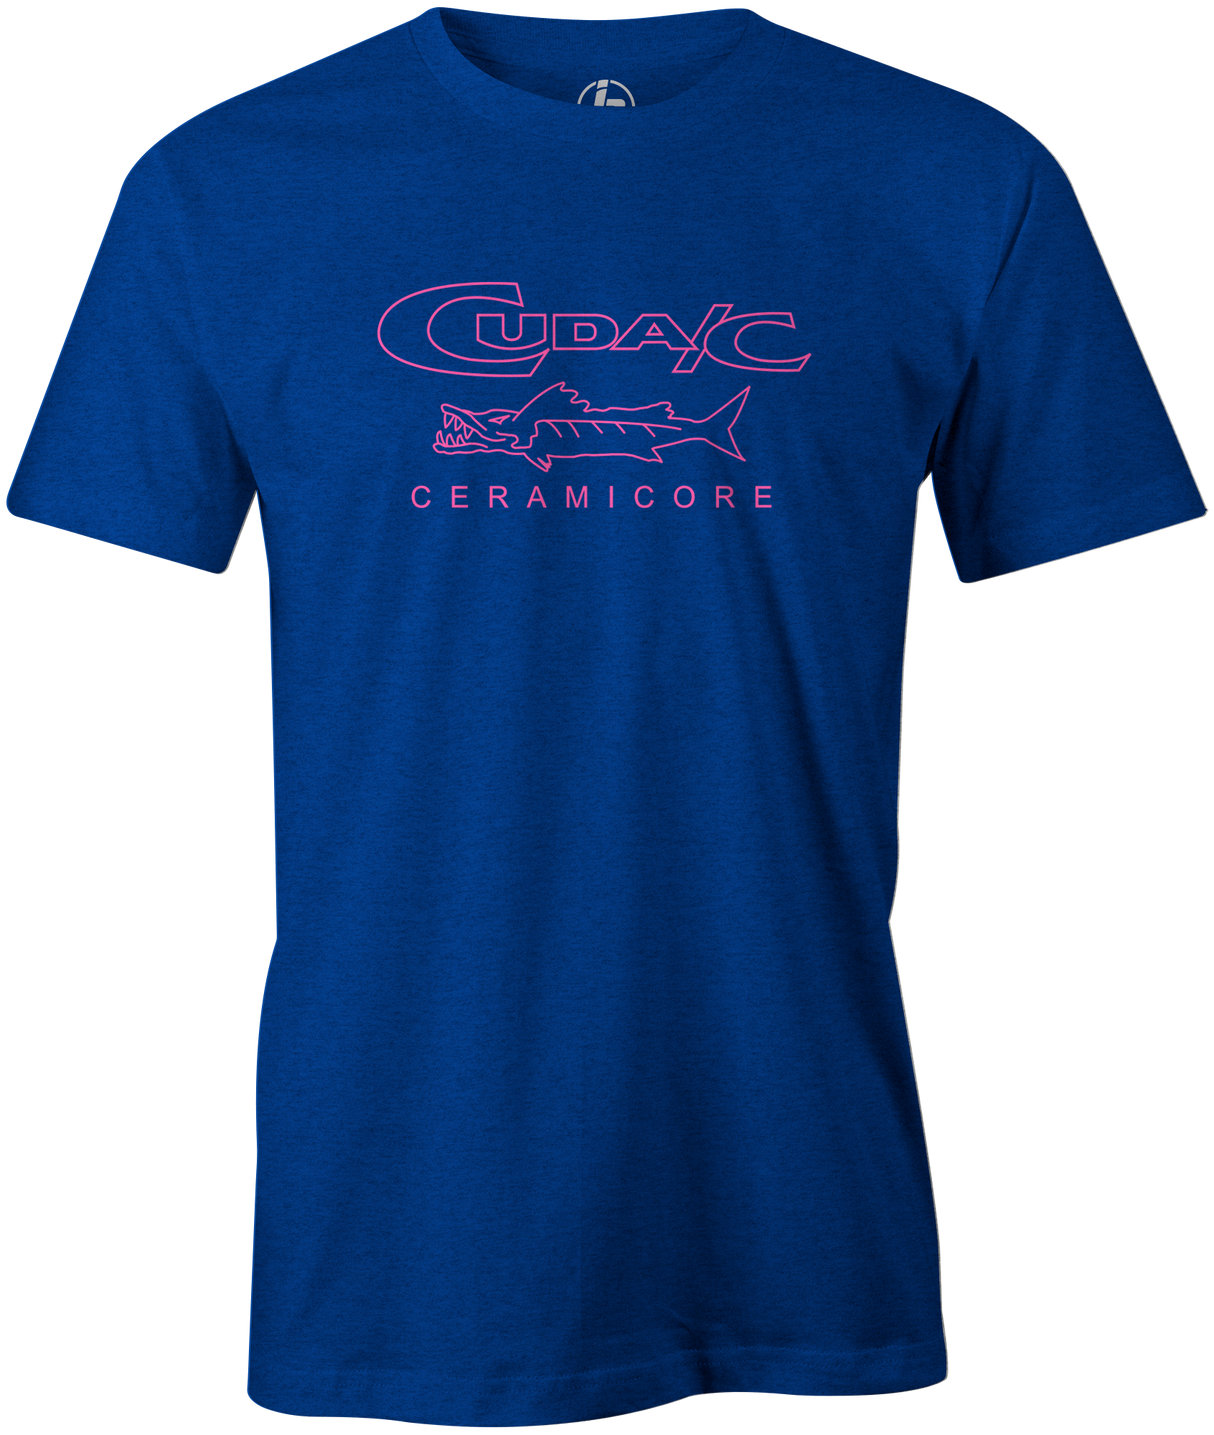 Cuda/C Men's T-Shirt, Bowling, Blue, Retro, throwback, vintage, old school, bowling ball, fish, tee, tee-shirt, tee shirt, tshirt.